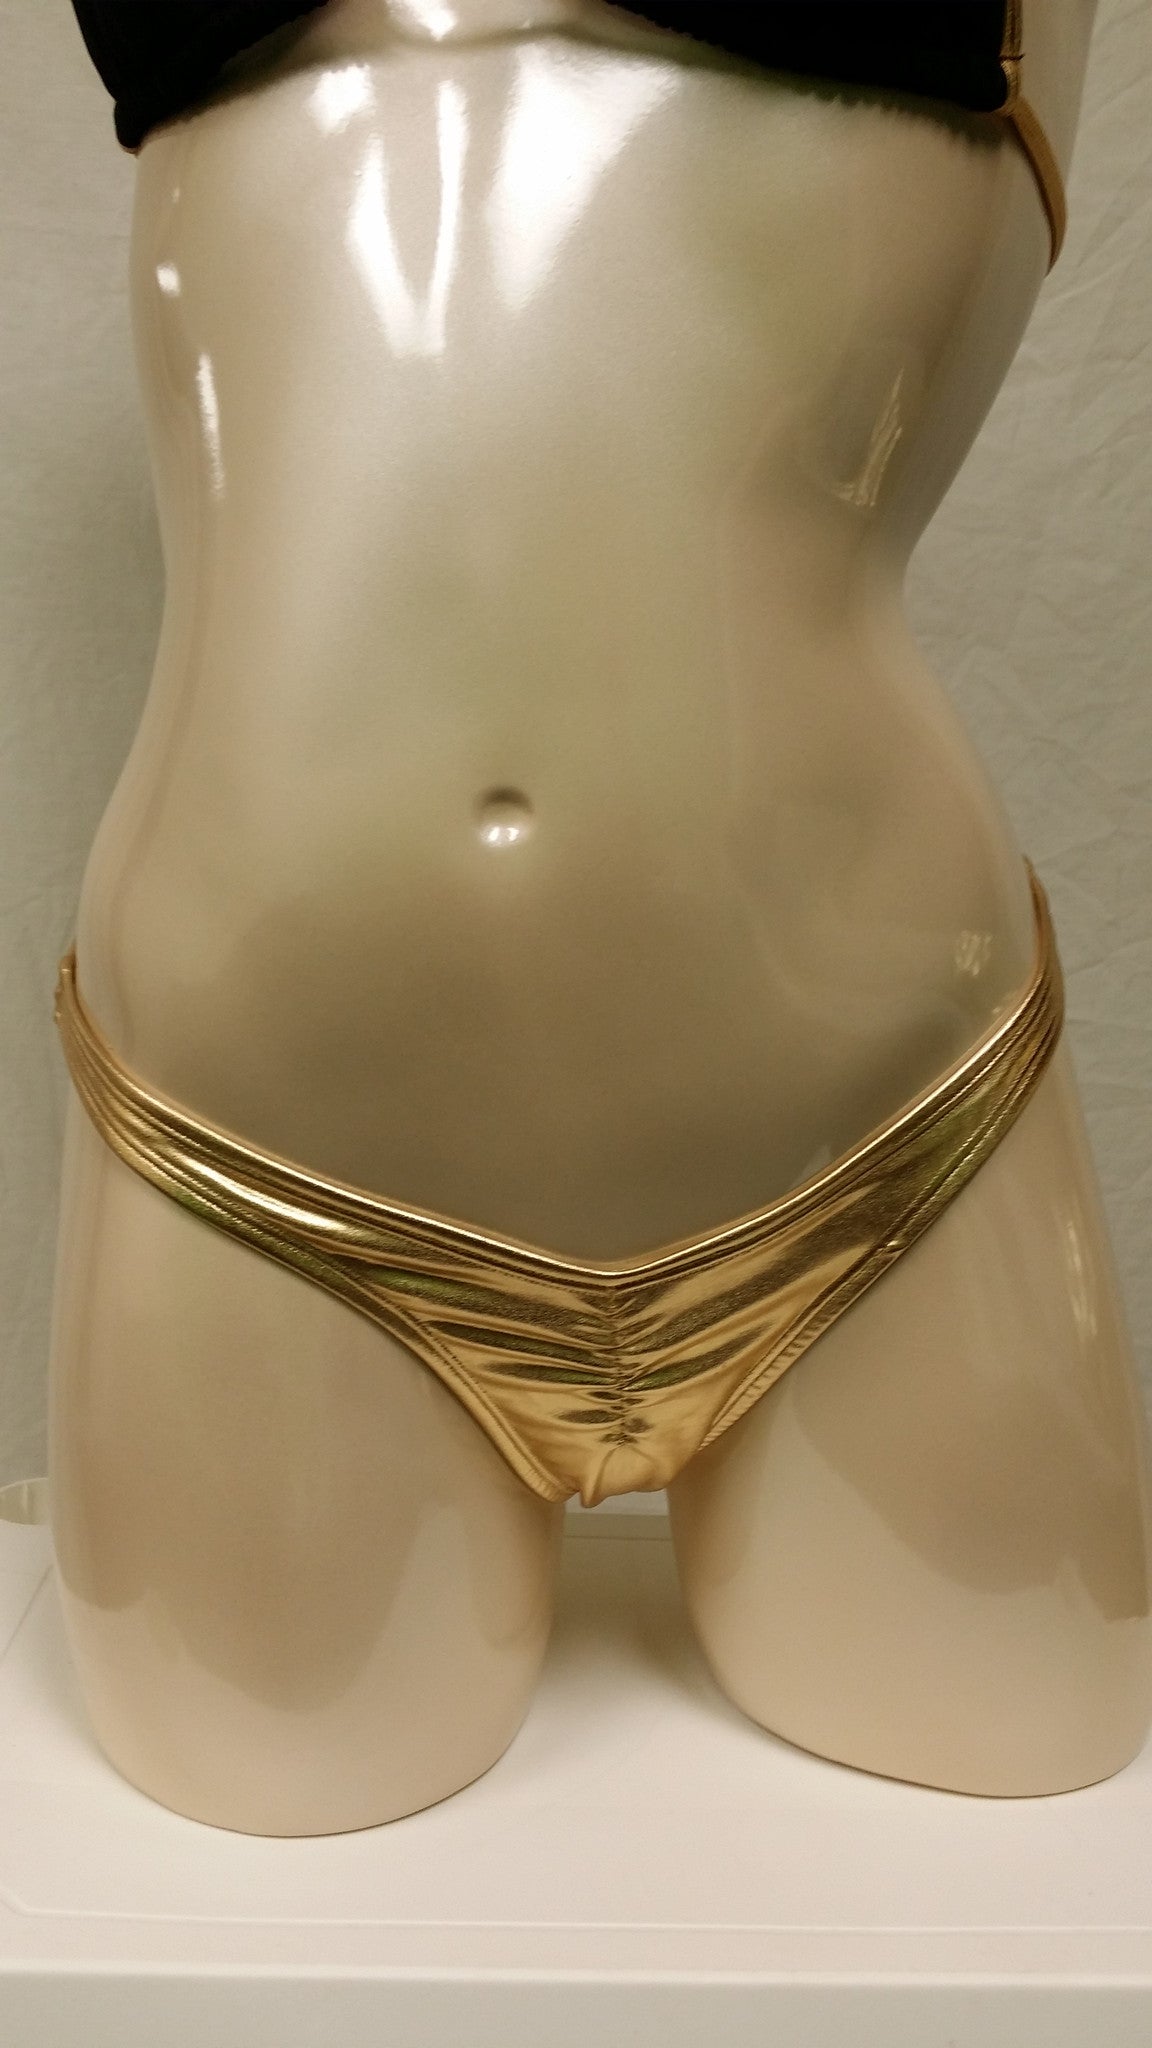 Venus Gold